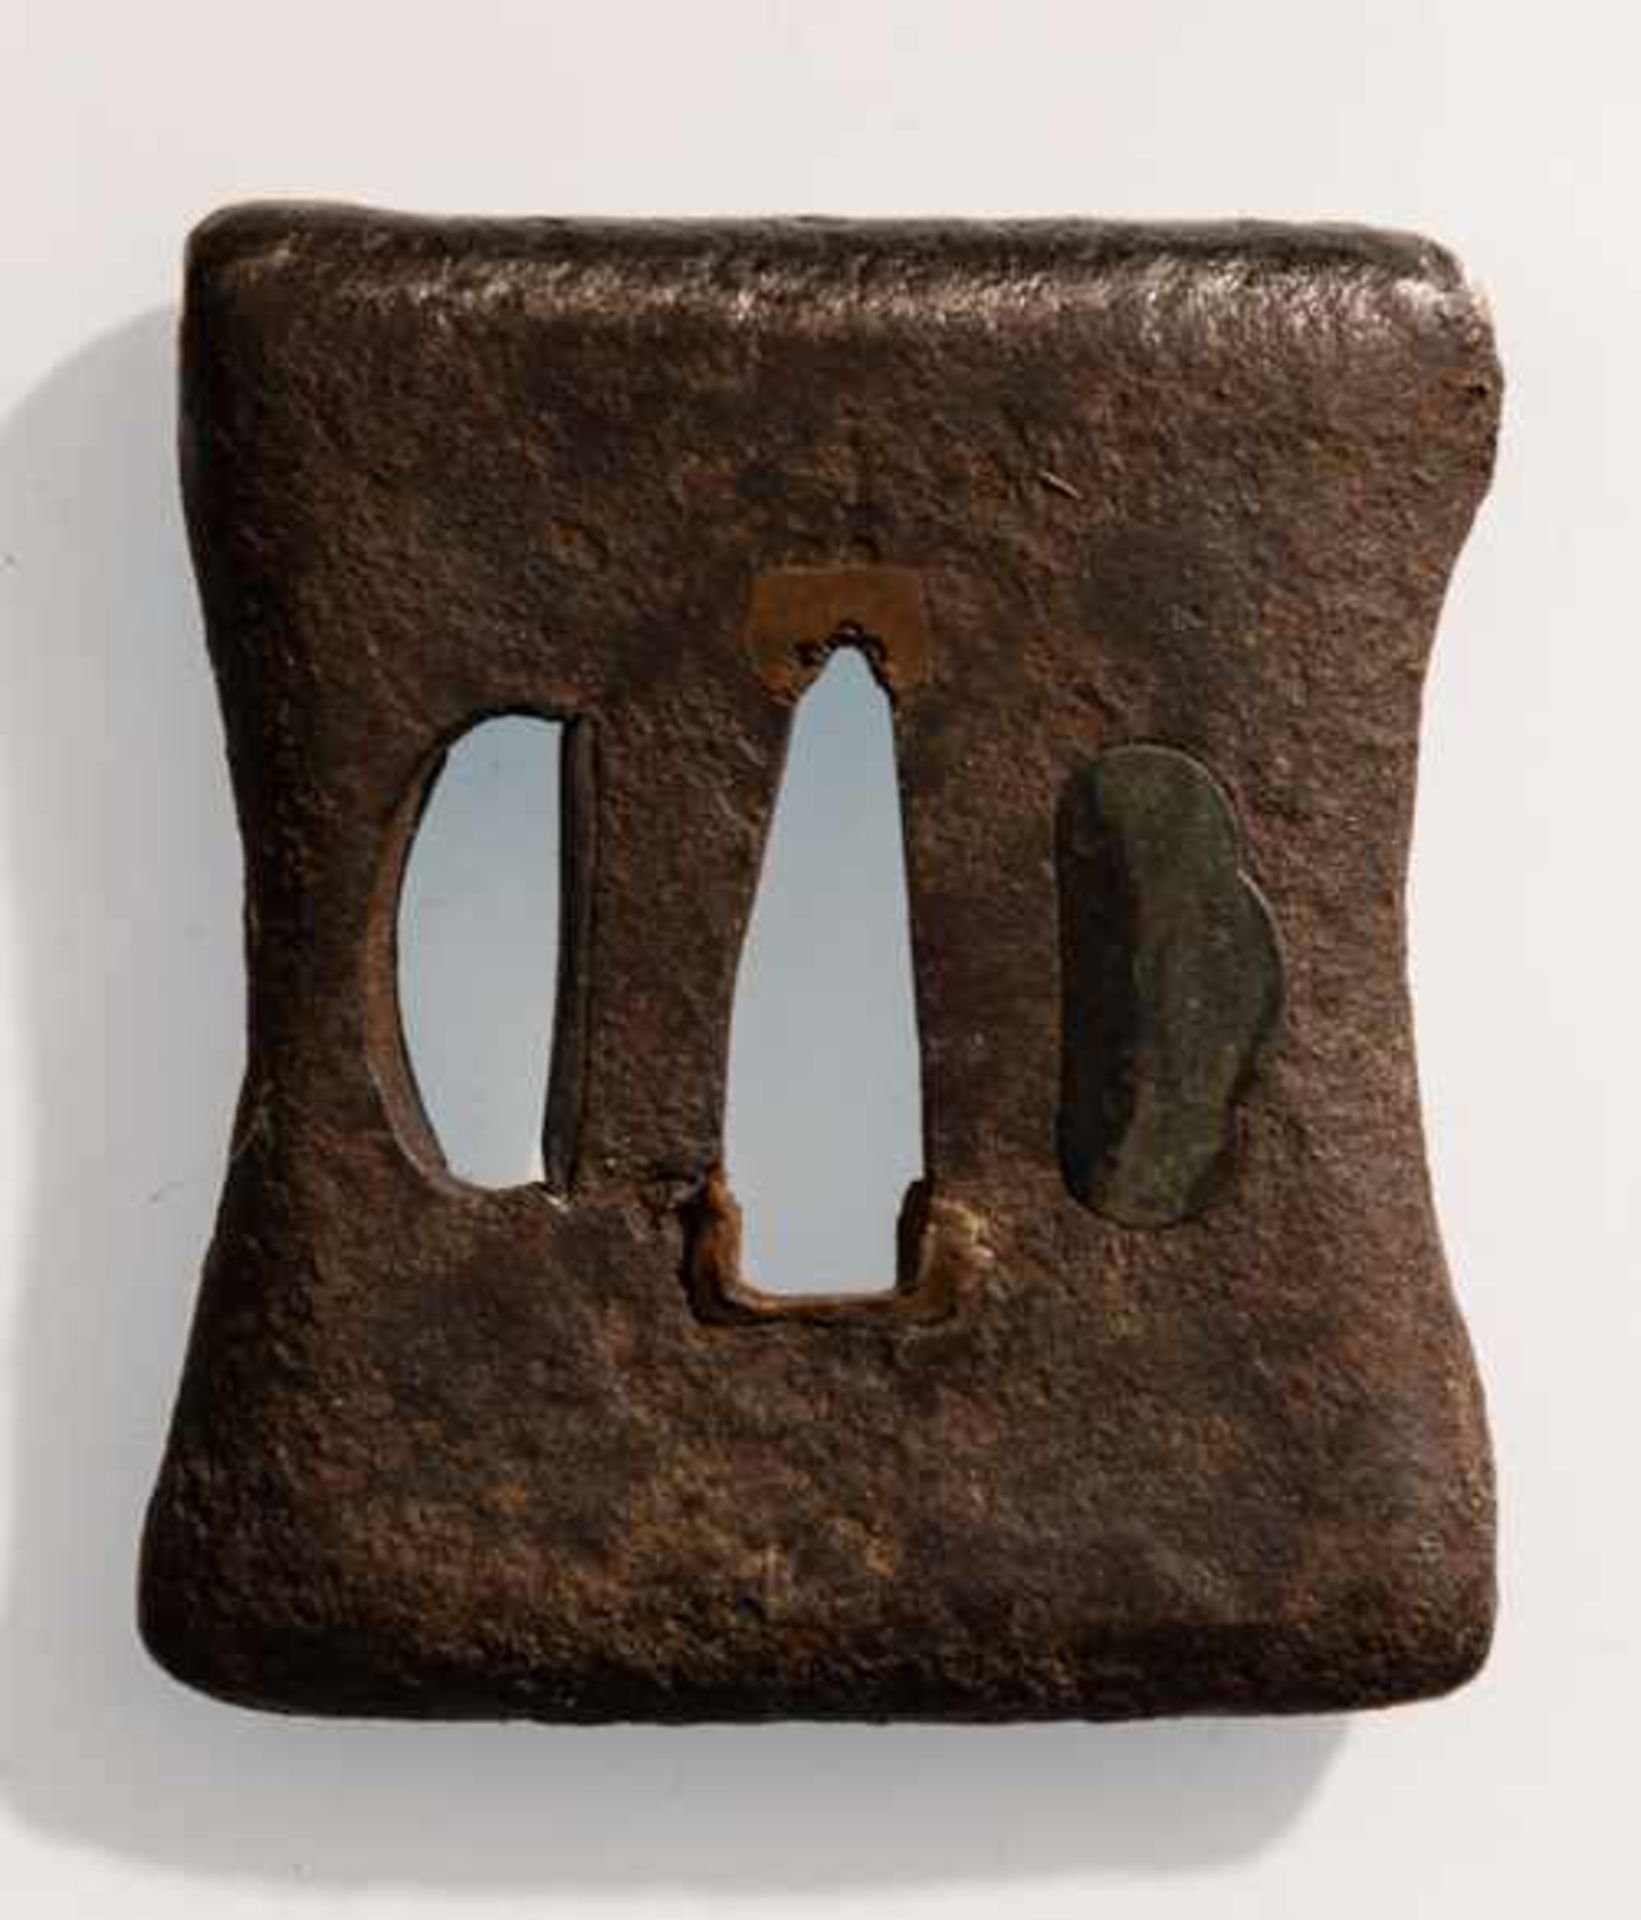 TSUBA EINES SCHERTSCHMIEDES Eisen. Japan, 17. bis 18. Jh. (oder früher) Quadratische Form mit nach